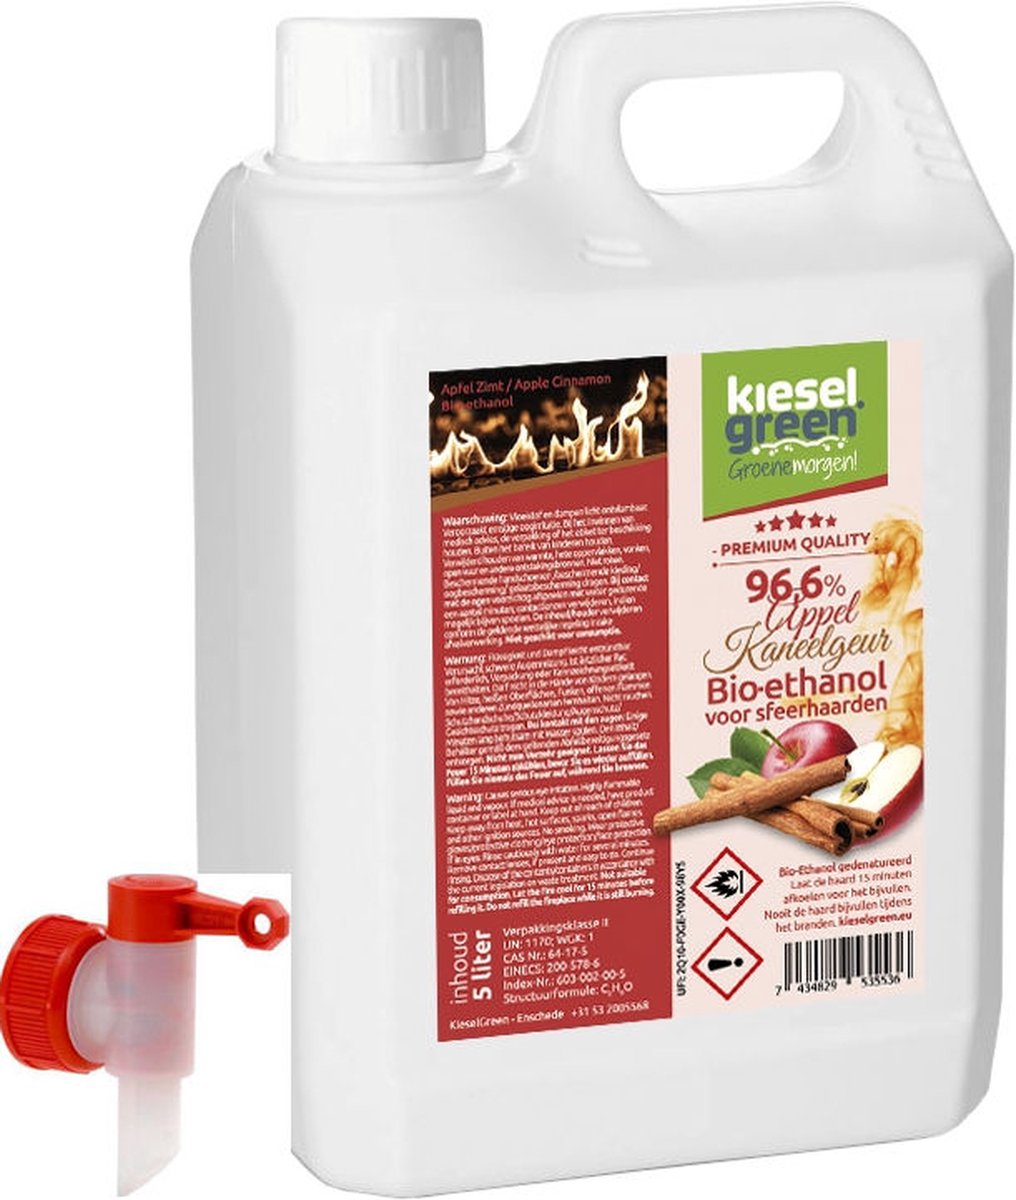 KieselGreen 5 Liter Bio-Ethanol met Kaneel/Appel Aroma - Bioethanol 96.6%, Veilig voor Sfeerhaarden en Tafelhaarden, Milieuvriendelijk - Premium Kwaliteit Ethanol voor Binnen en Buiten